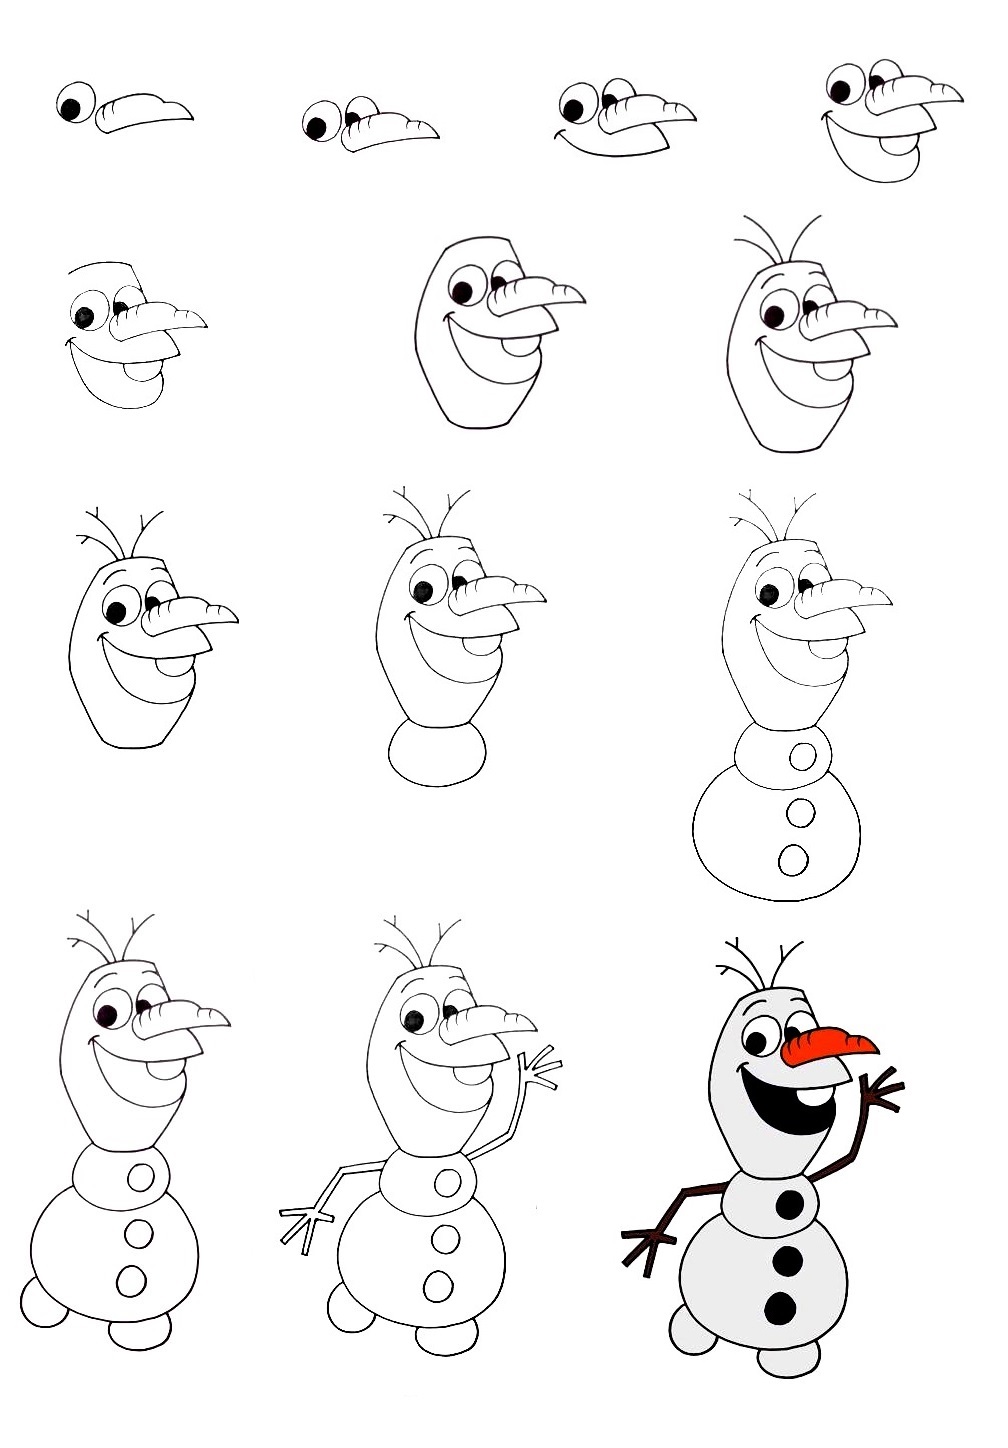 Olaf-Drawing